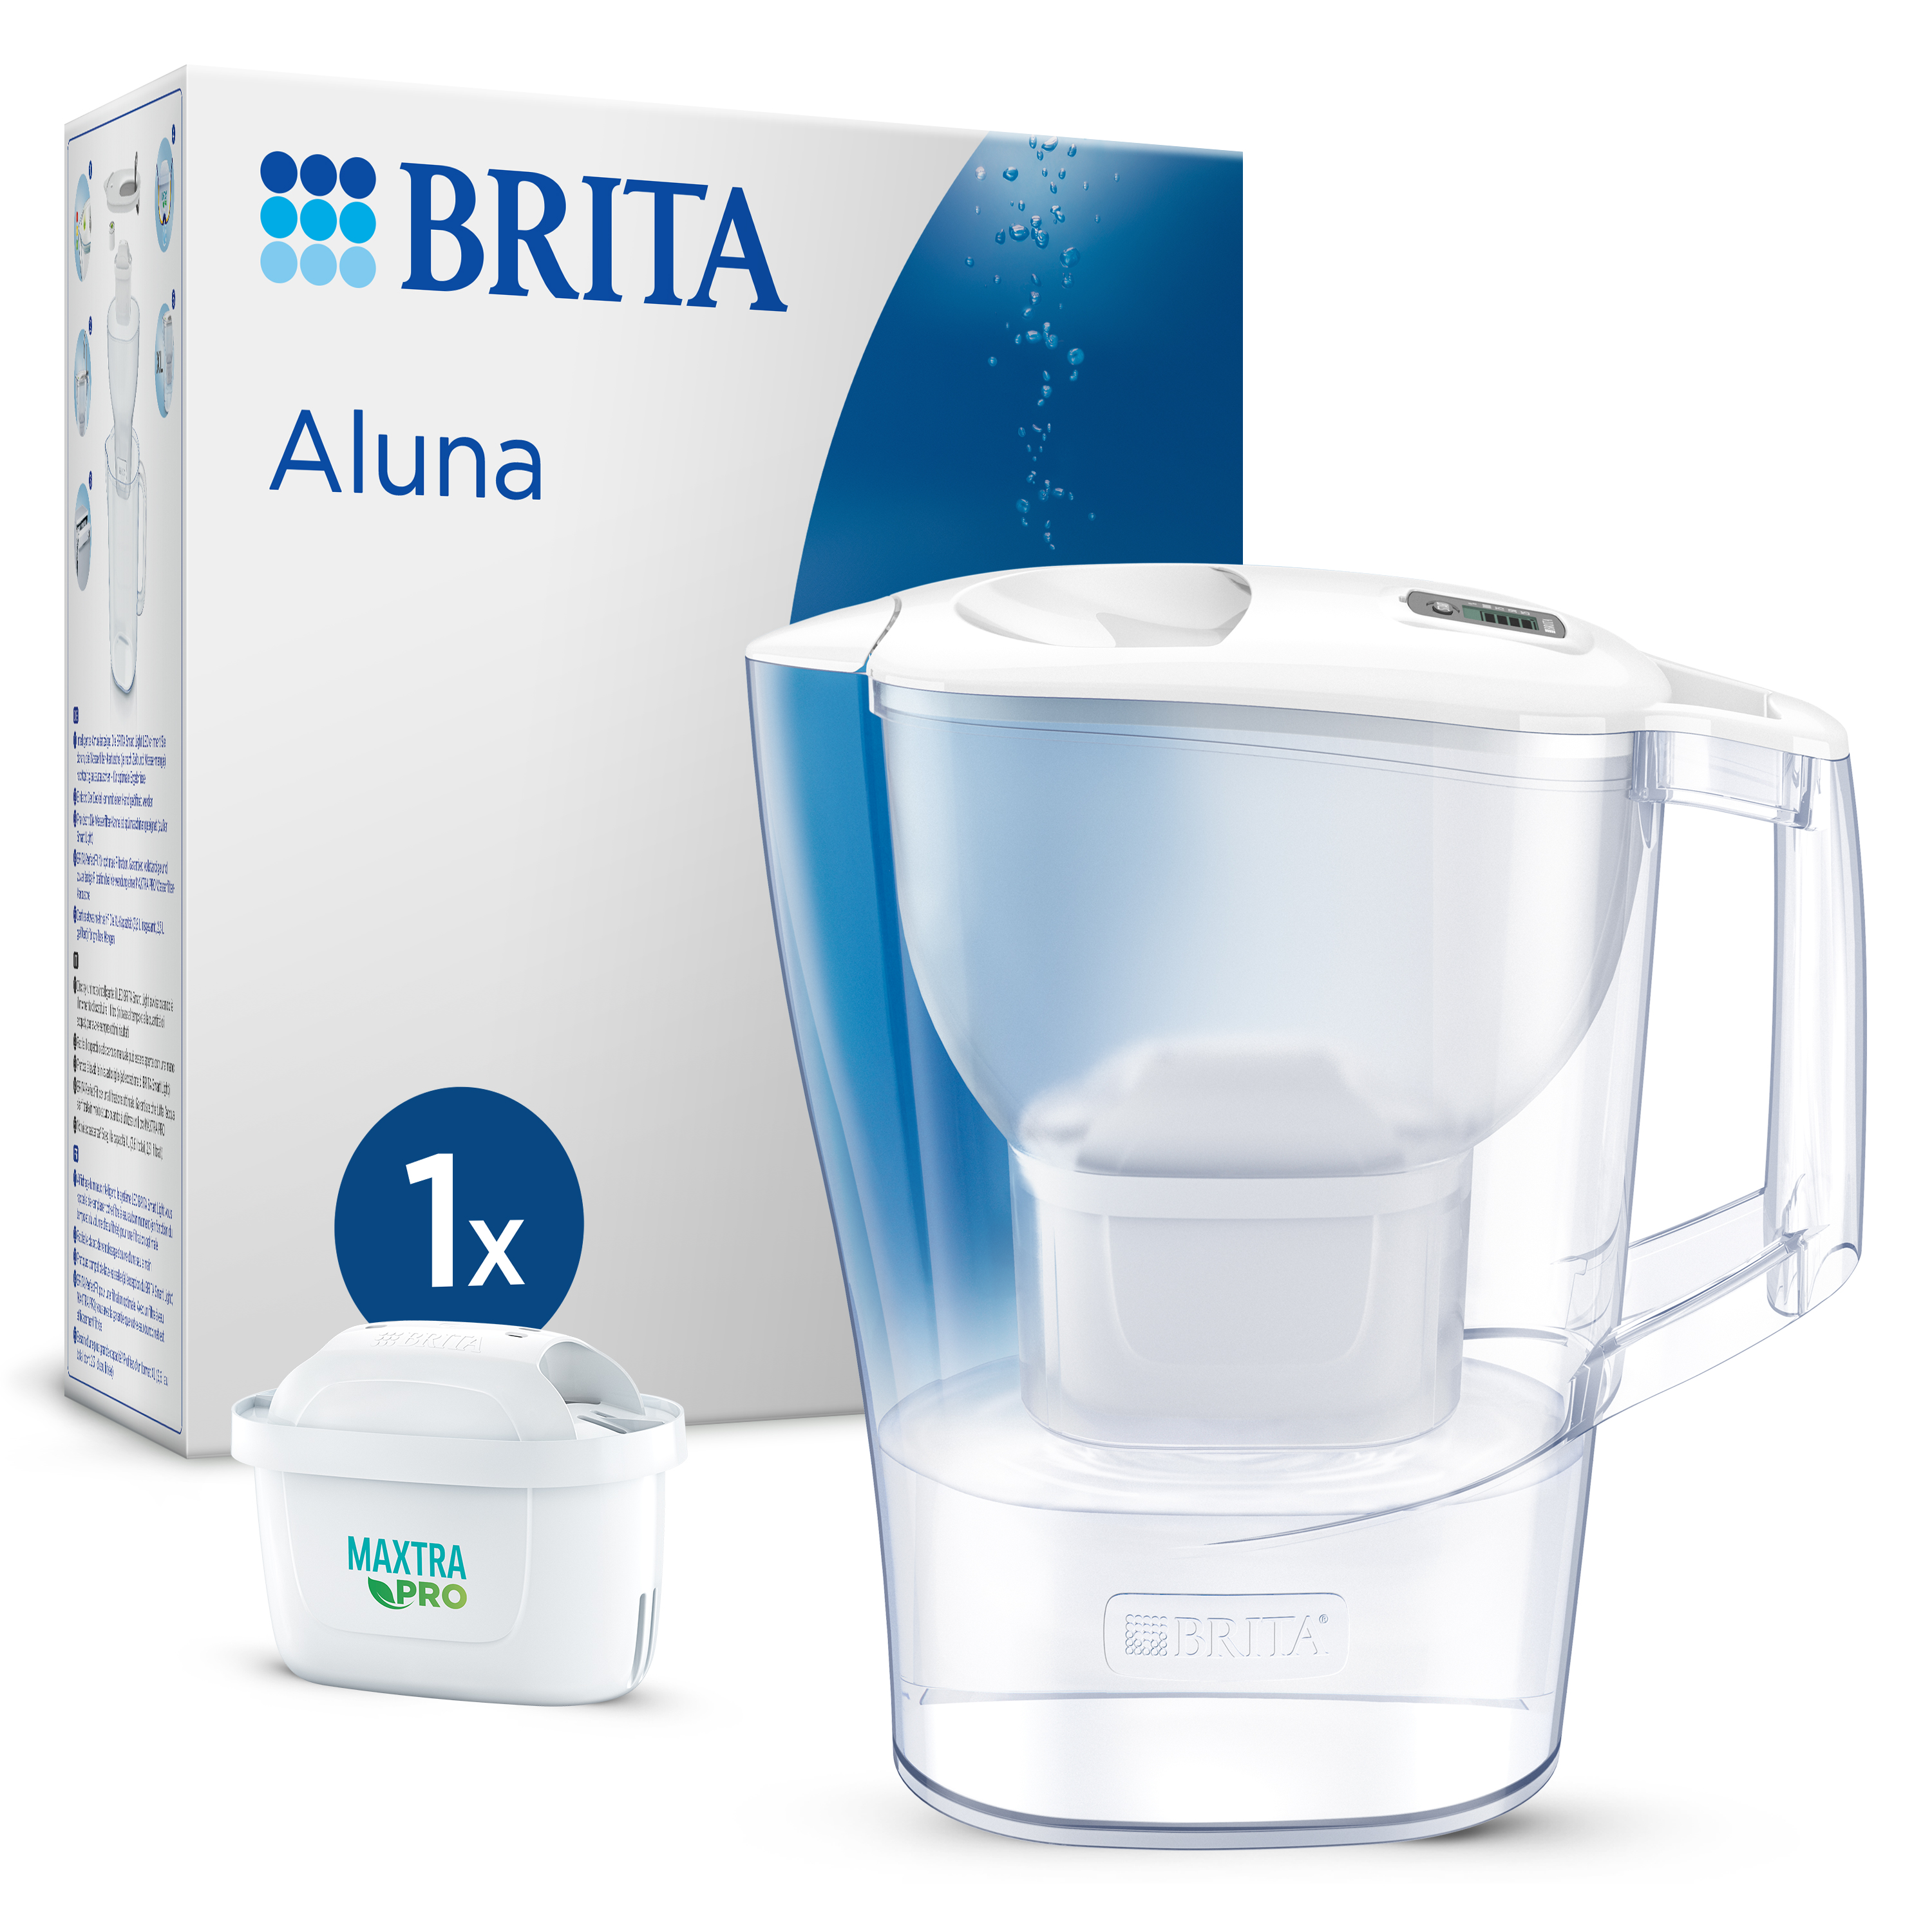 Brita - BRITA Aluna Jarra Filtradora de Agua de 2,4 L, Incluye 1 Filtro MAXTRA PRO, Reduce la Cal y el Cloro, Para Bebidas Calientes o Frías